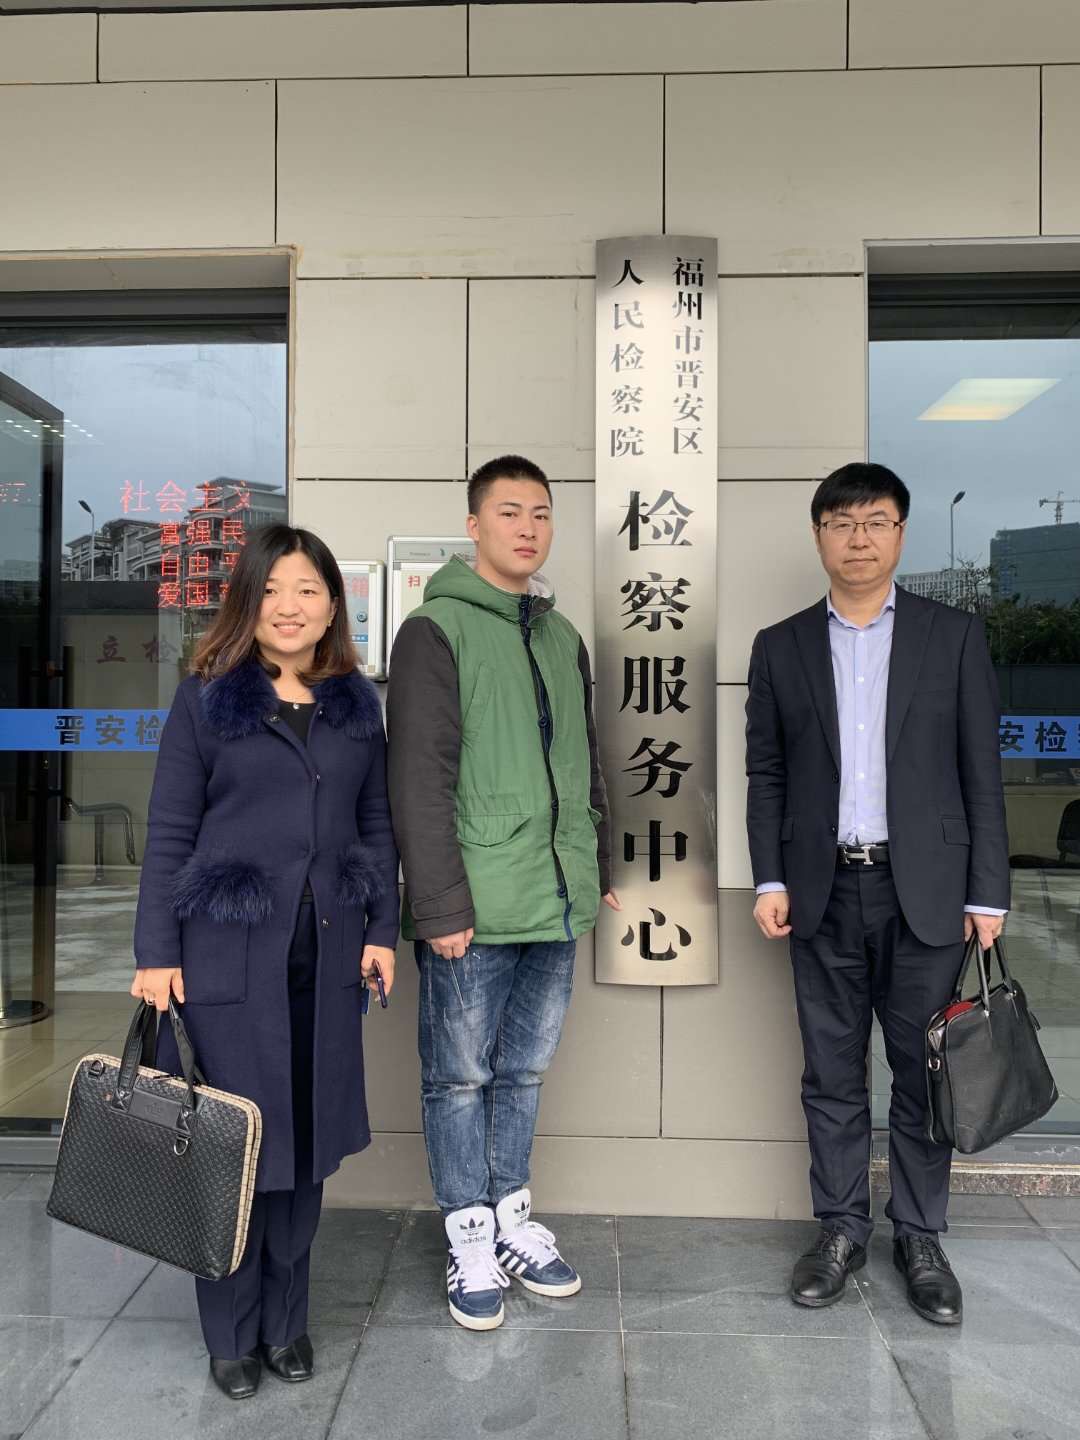  赵宇和代理律师范辰、白飞云在晋安区检察院门口。受访者供图